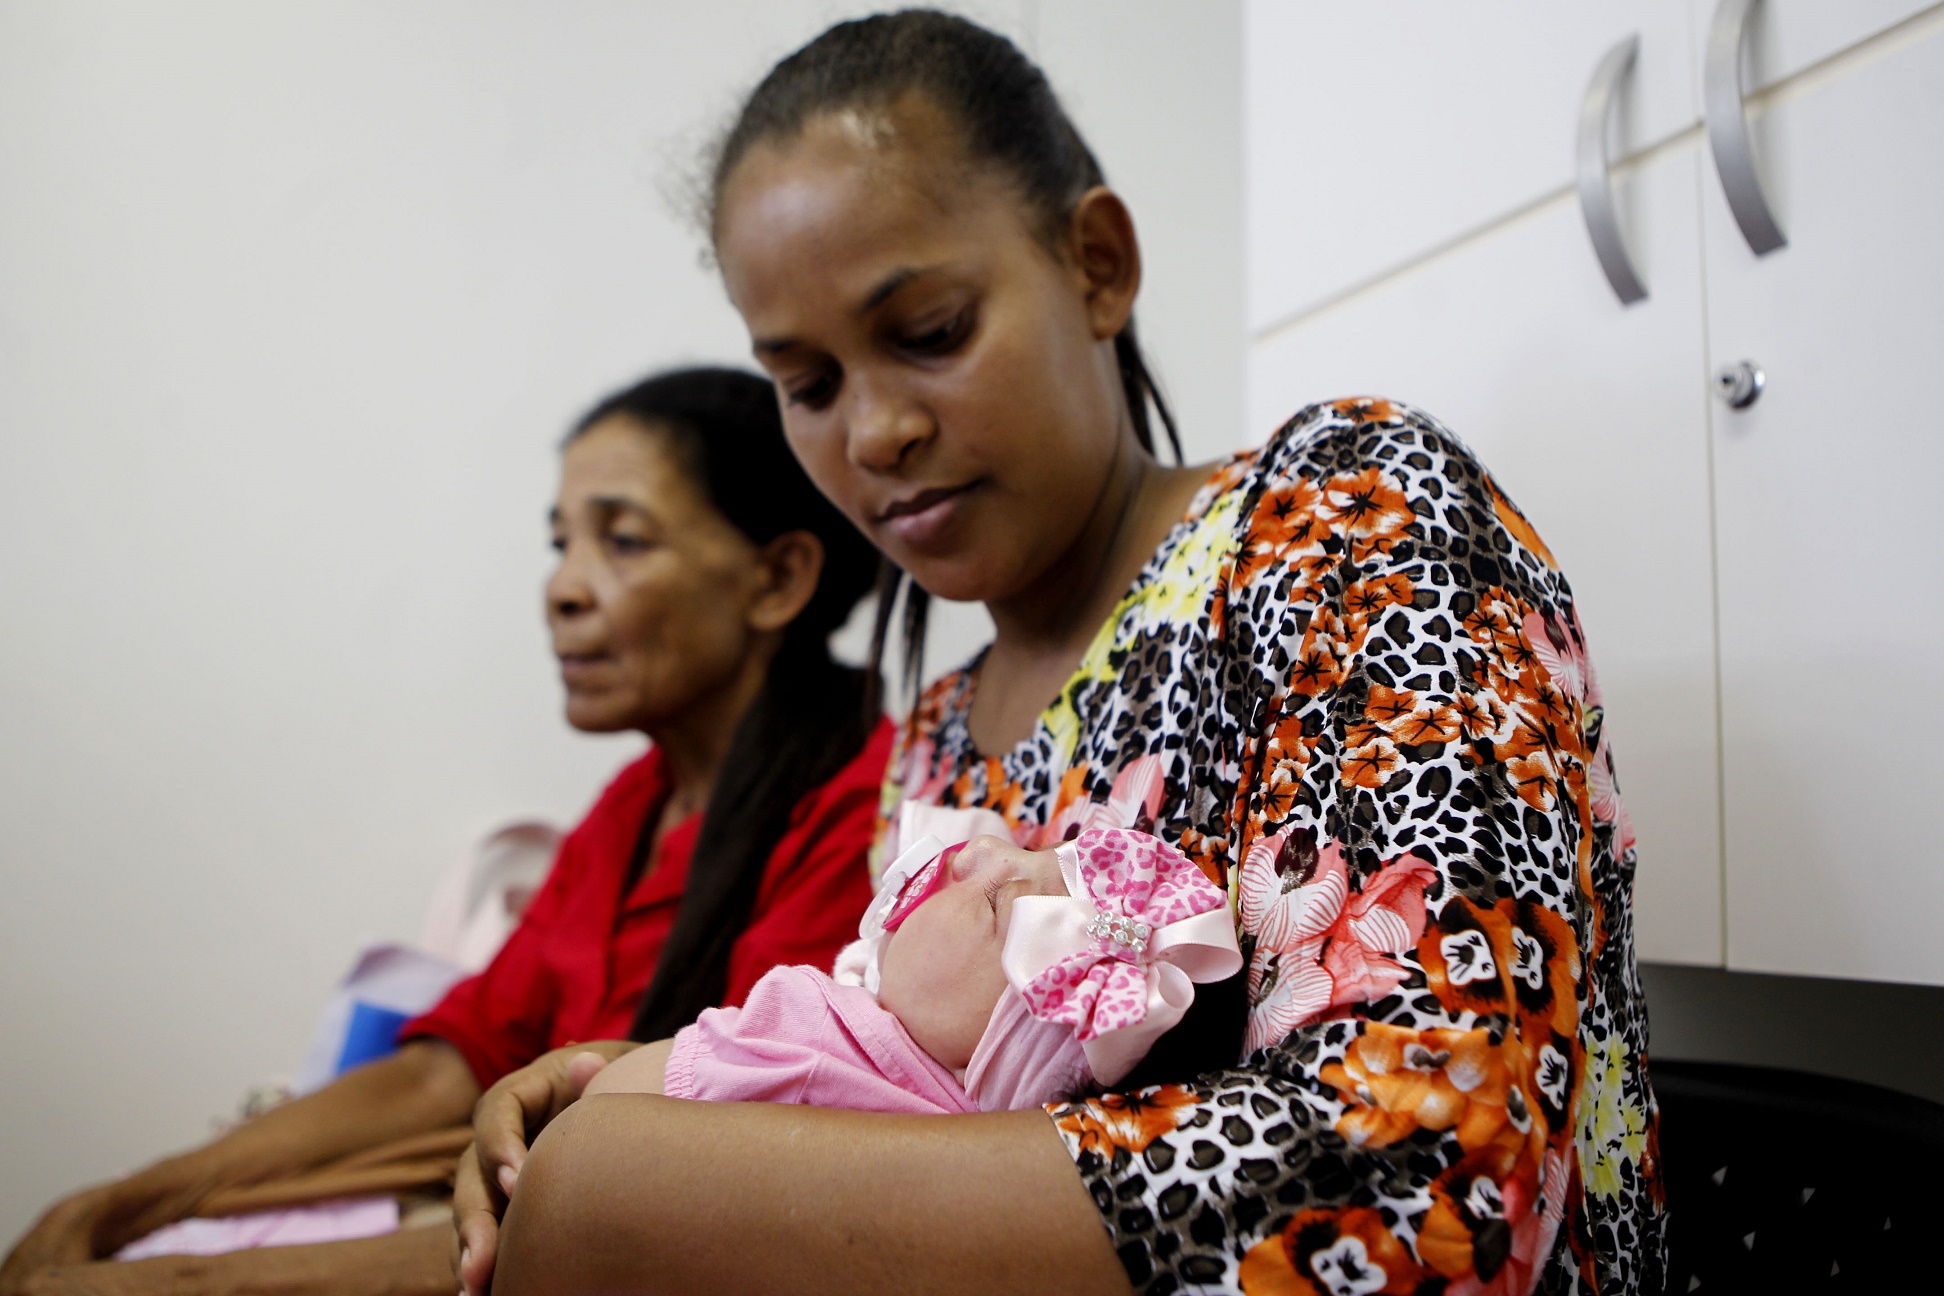 Sofia Valentina, de 7 meses, diagnosticada com microcefalia, dorme no colo da mãe Vera Lúcia enquanto aguarda consulta num hospital de Recife